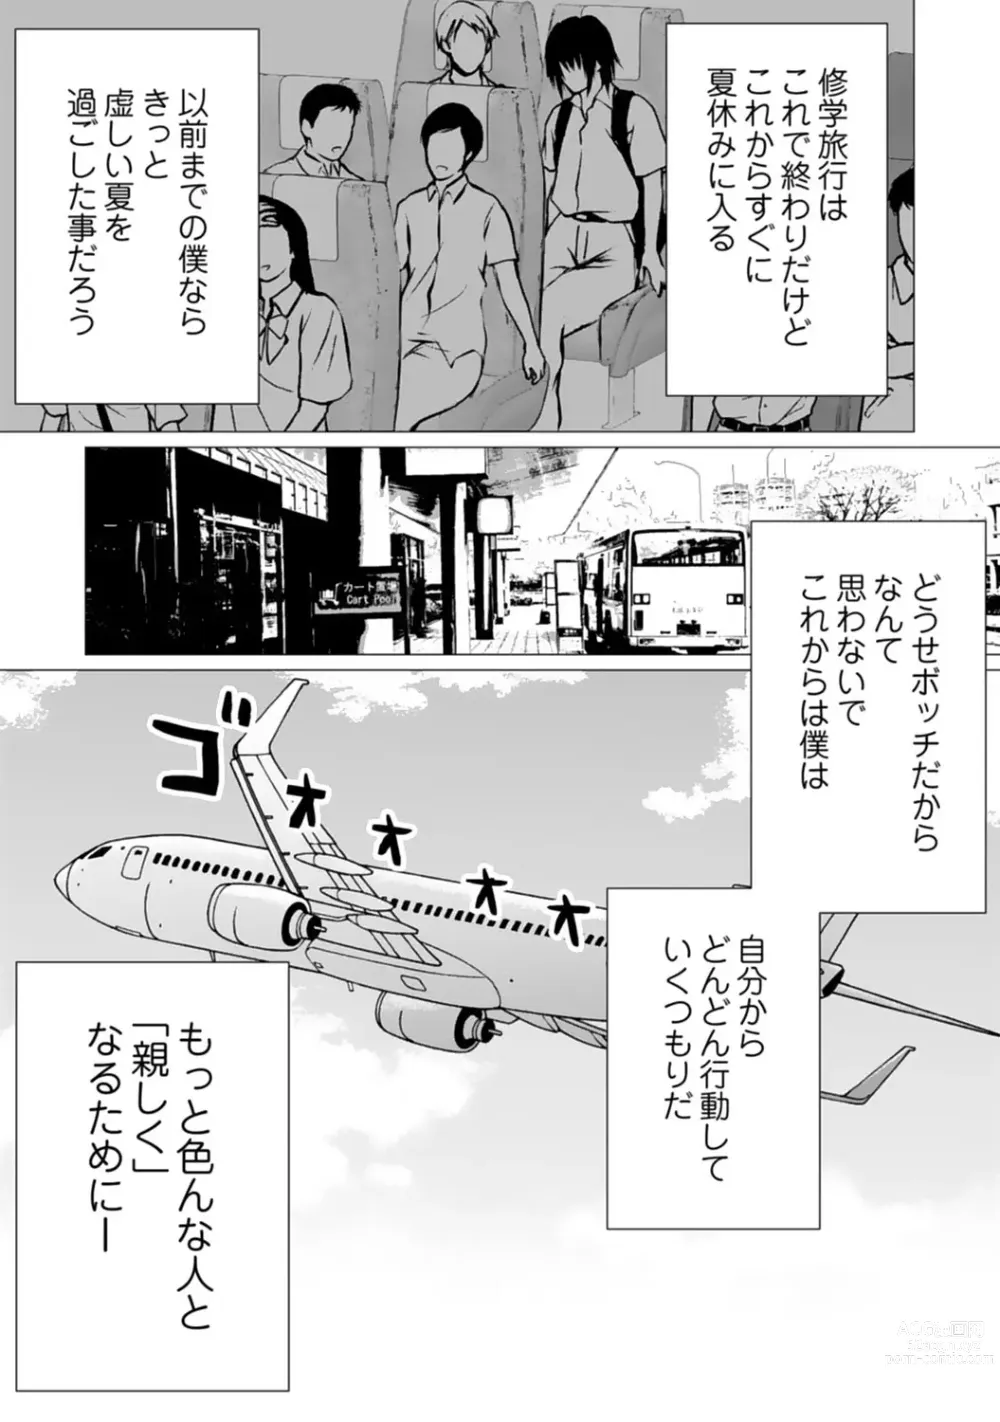 Page 122 of manga Bocchi no Boku demo, Kuzu no Yarichin ni Nareru tte Honto desu ka?